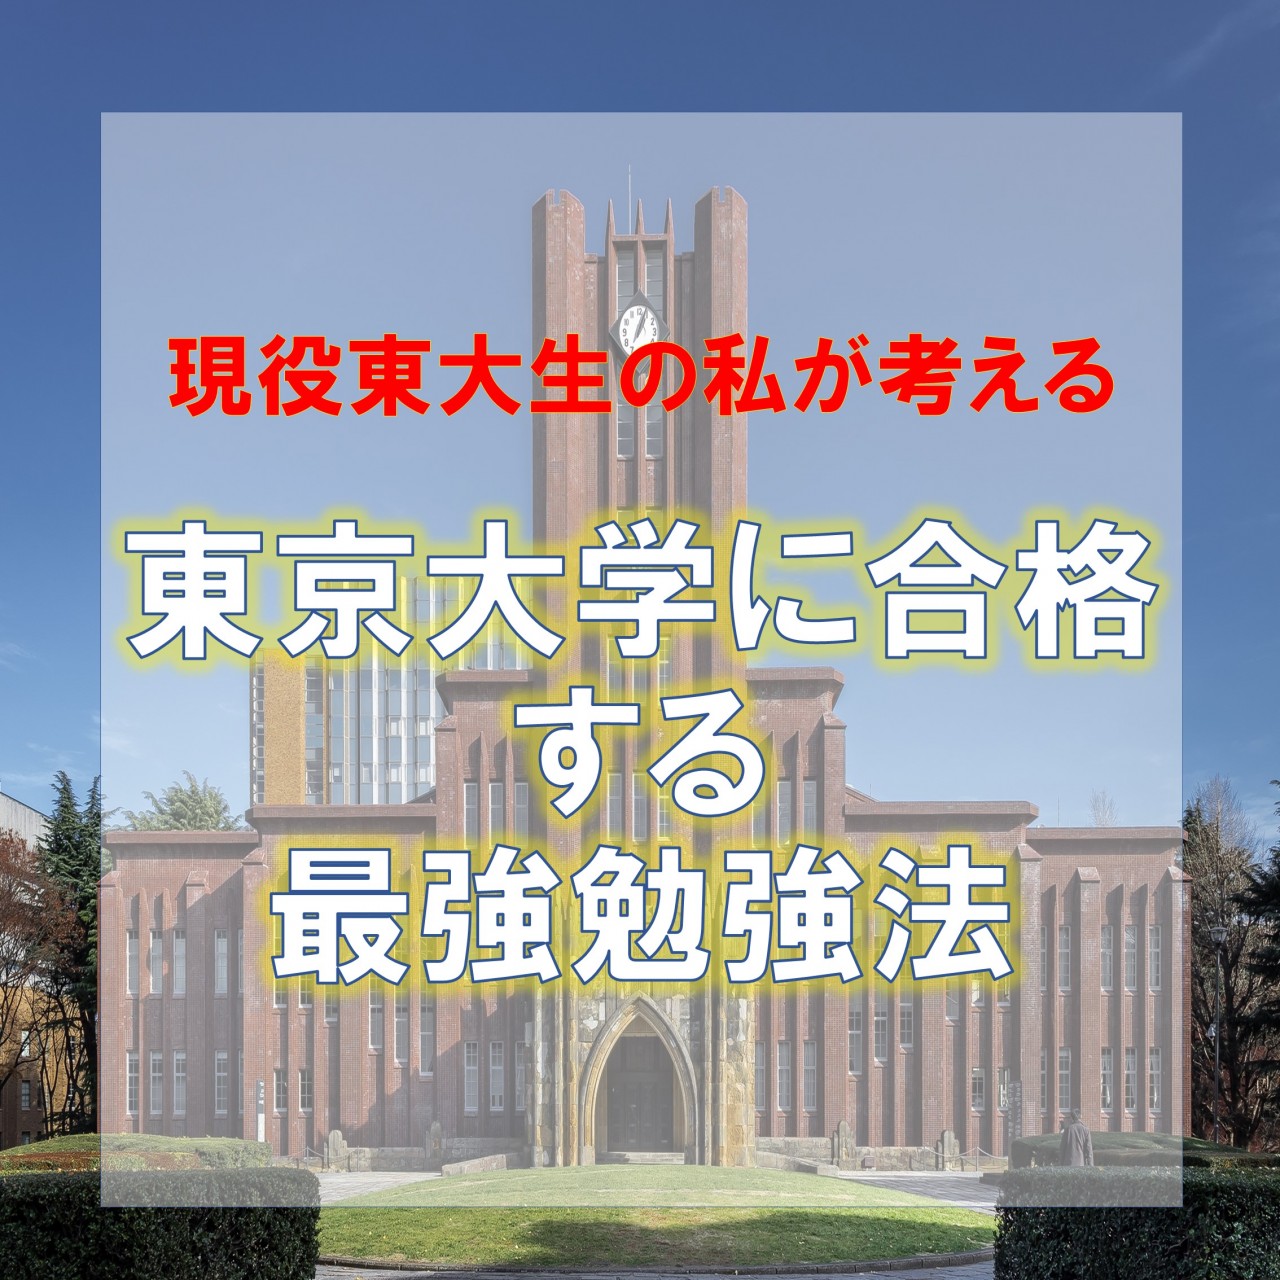 現役東大生の私が考える東京大学に合格するための最強勉強法